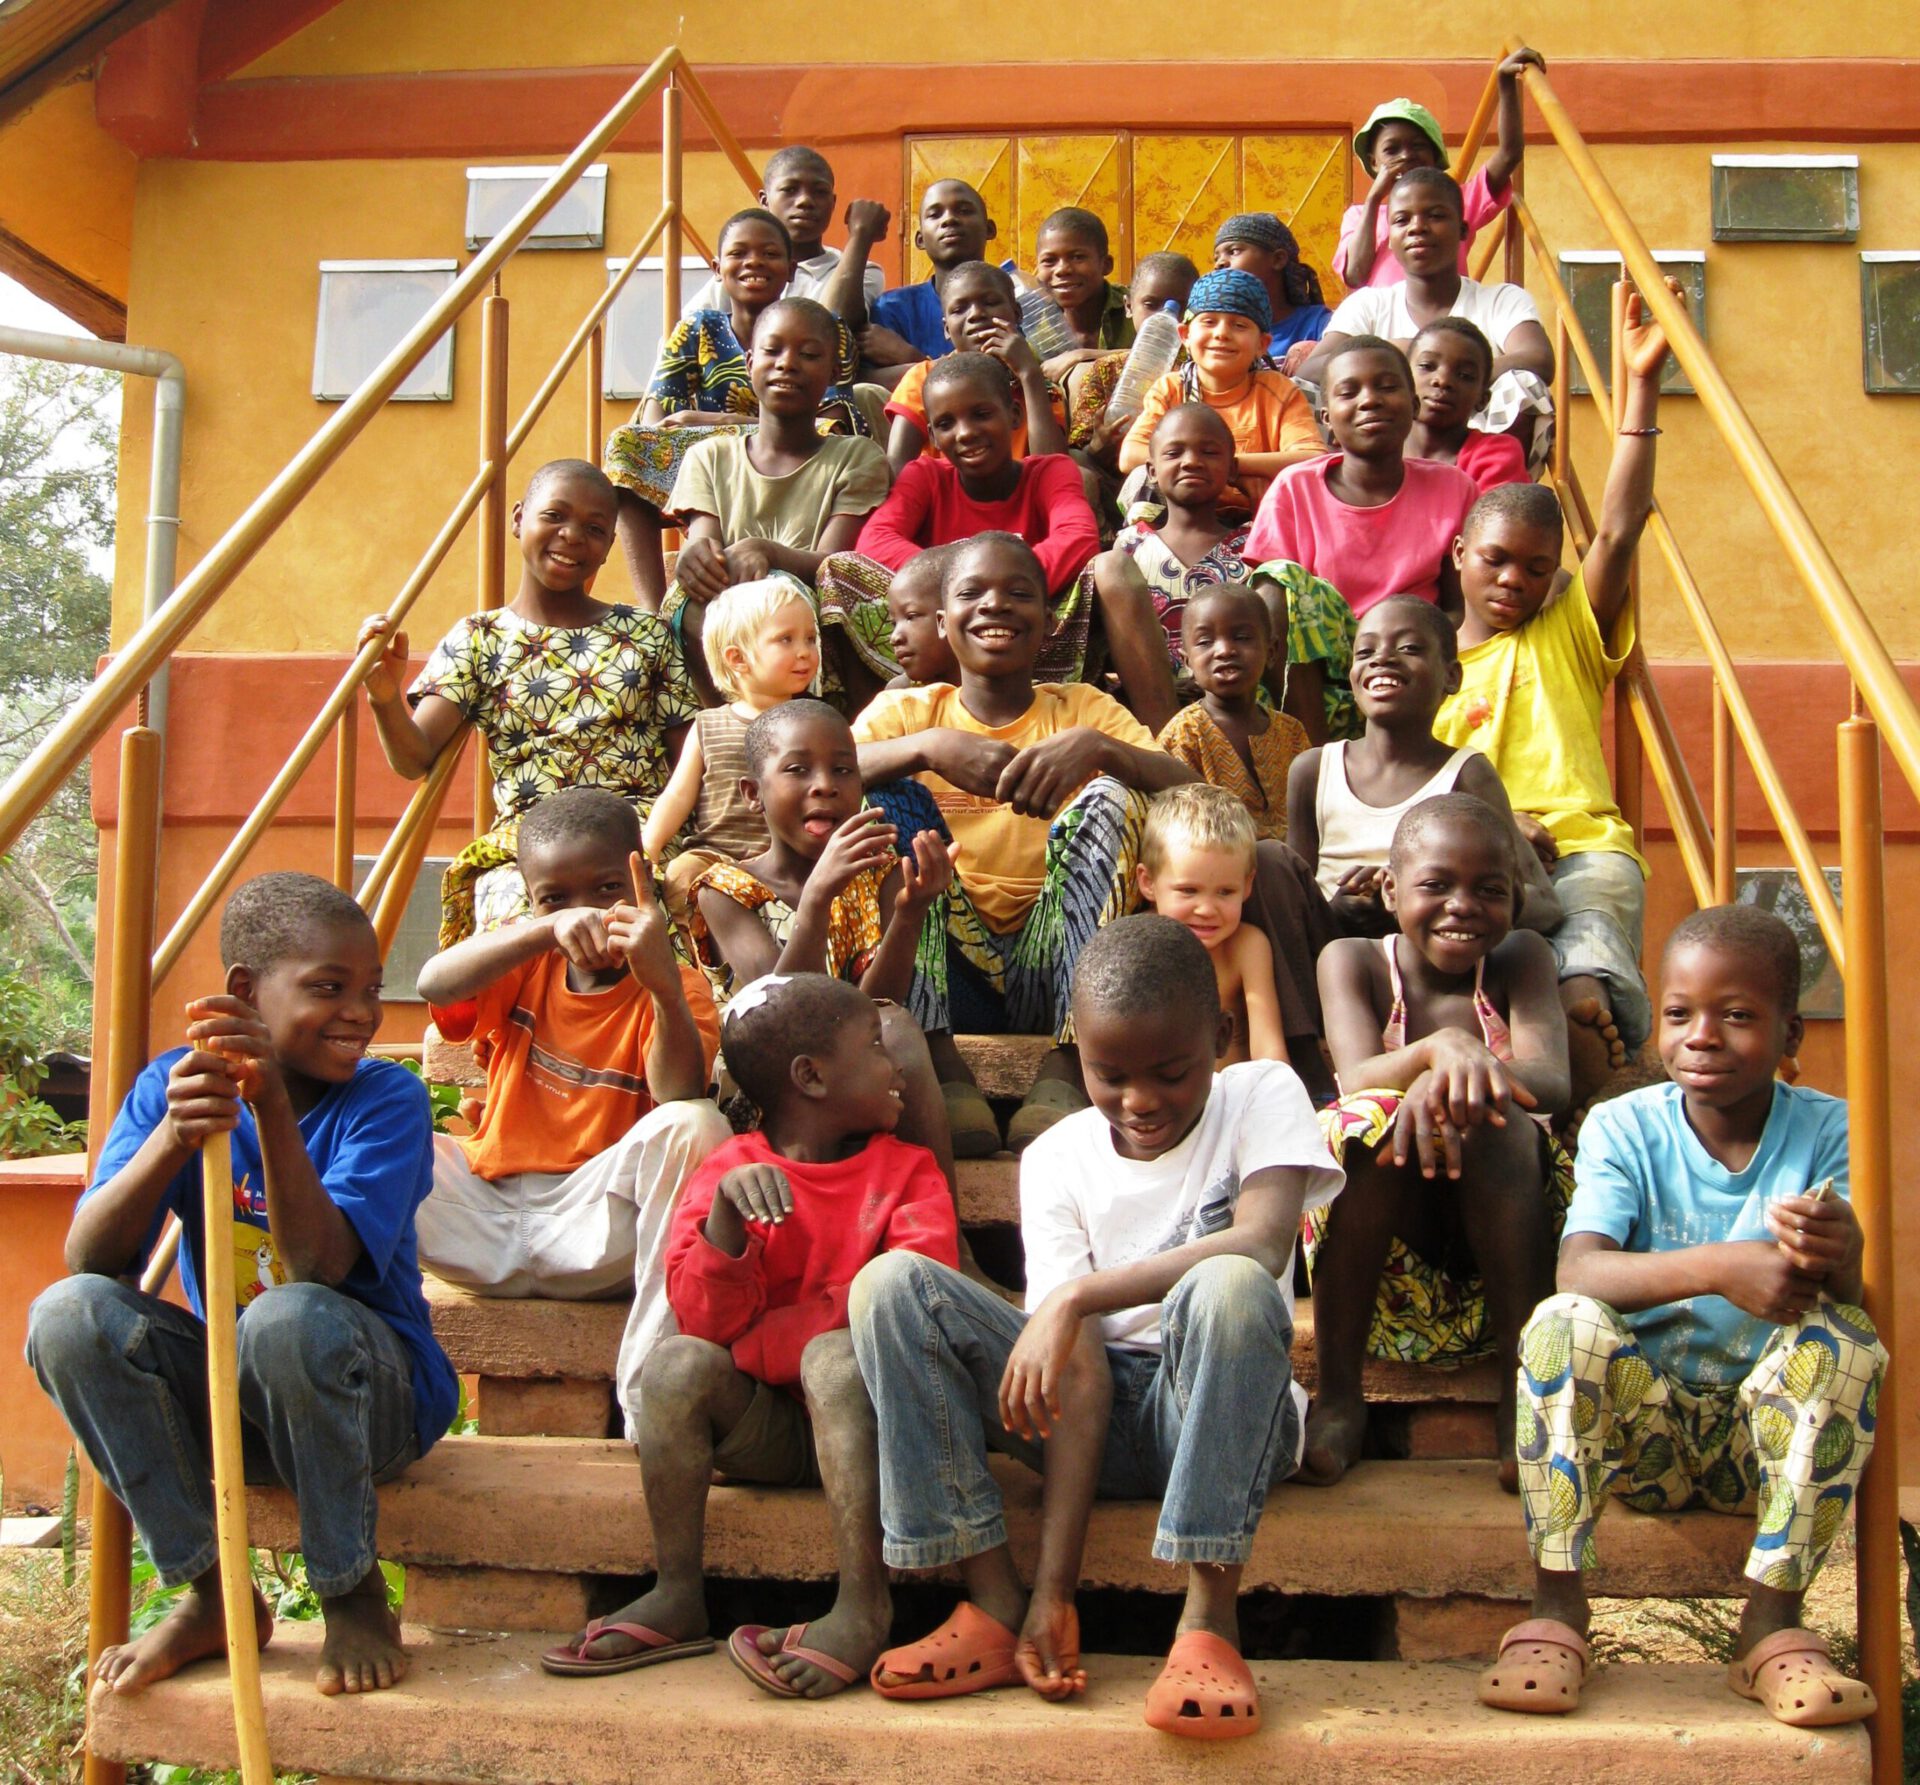 30 Kinder sitze n auf einer Treppe, vor einem orange - gelb gestrichenen Gebäude